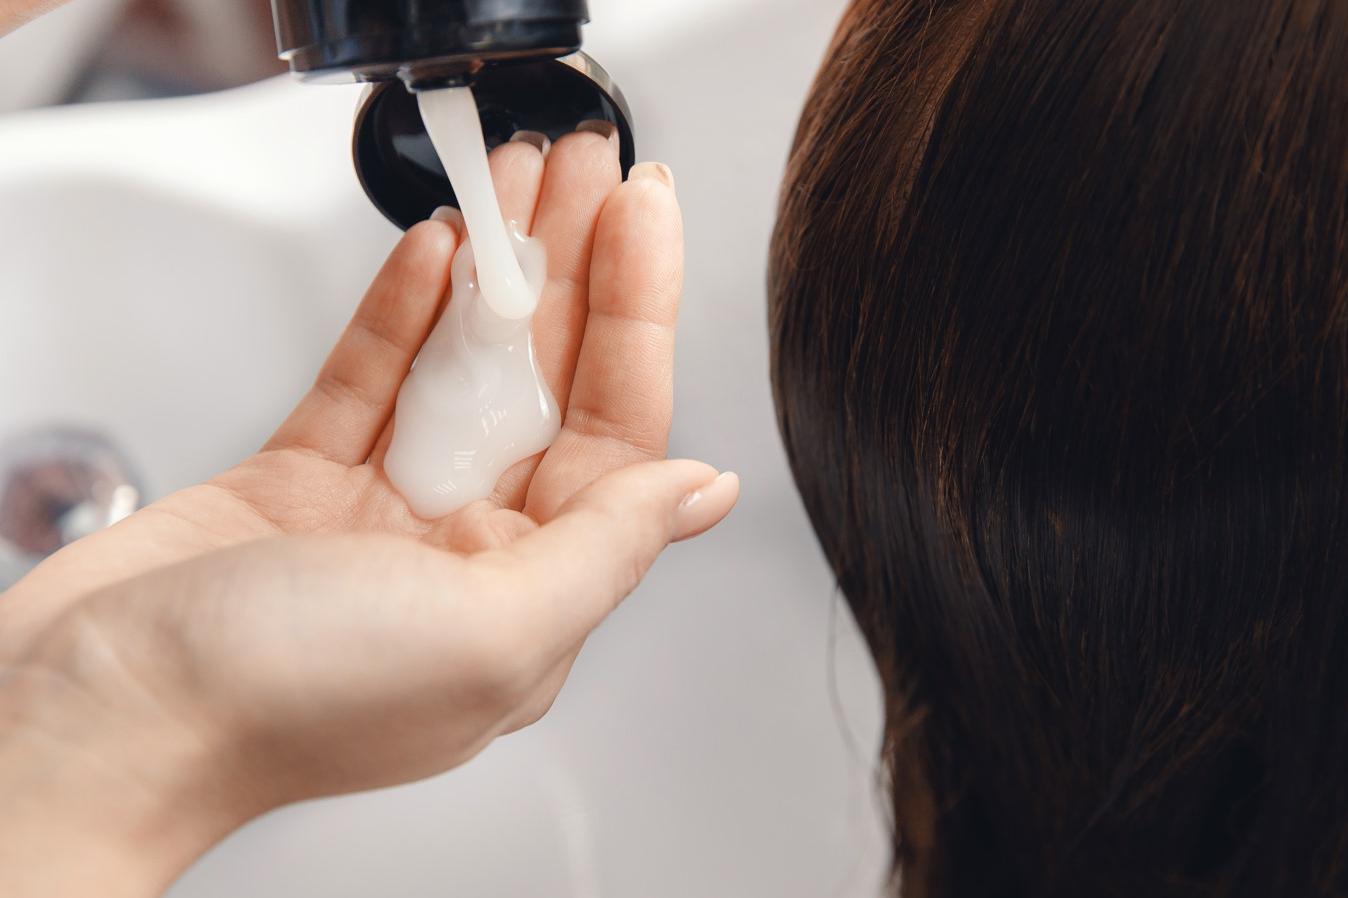 Чтобы реже мыть голову, постарайтесь подобрать подходящие средства для мытья и ухода без агрессивных компонентов